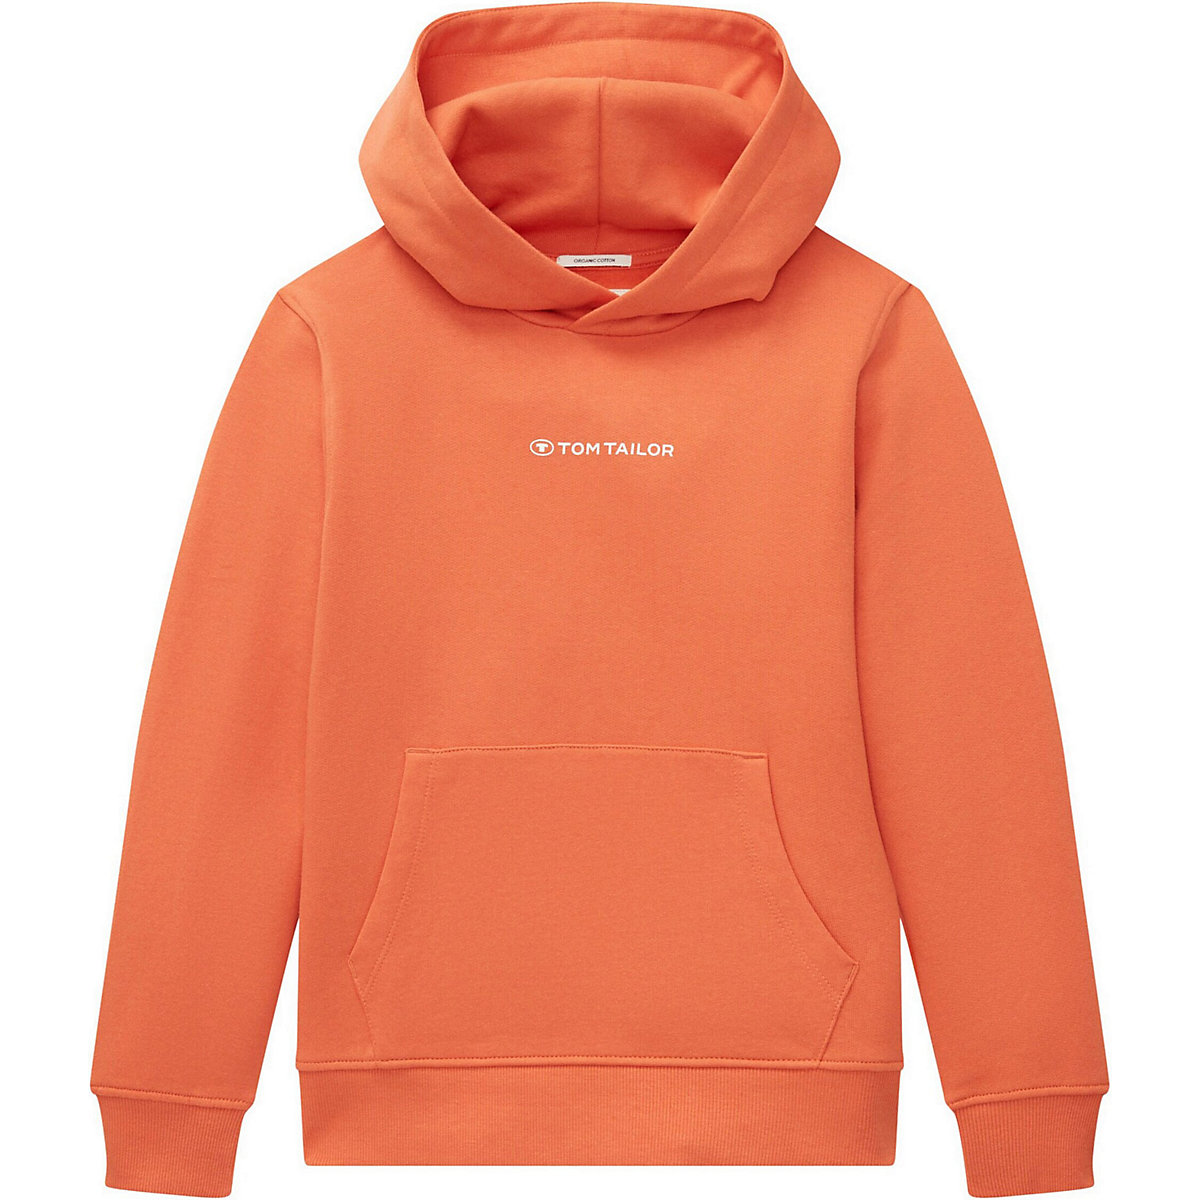 TOM TAILOR Sweatshirt für Jungen orange/weiß